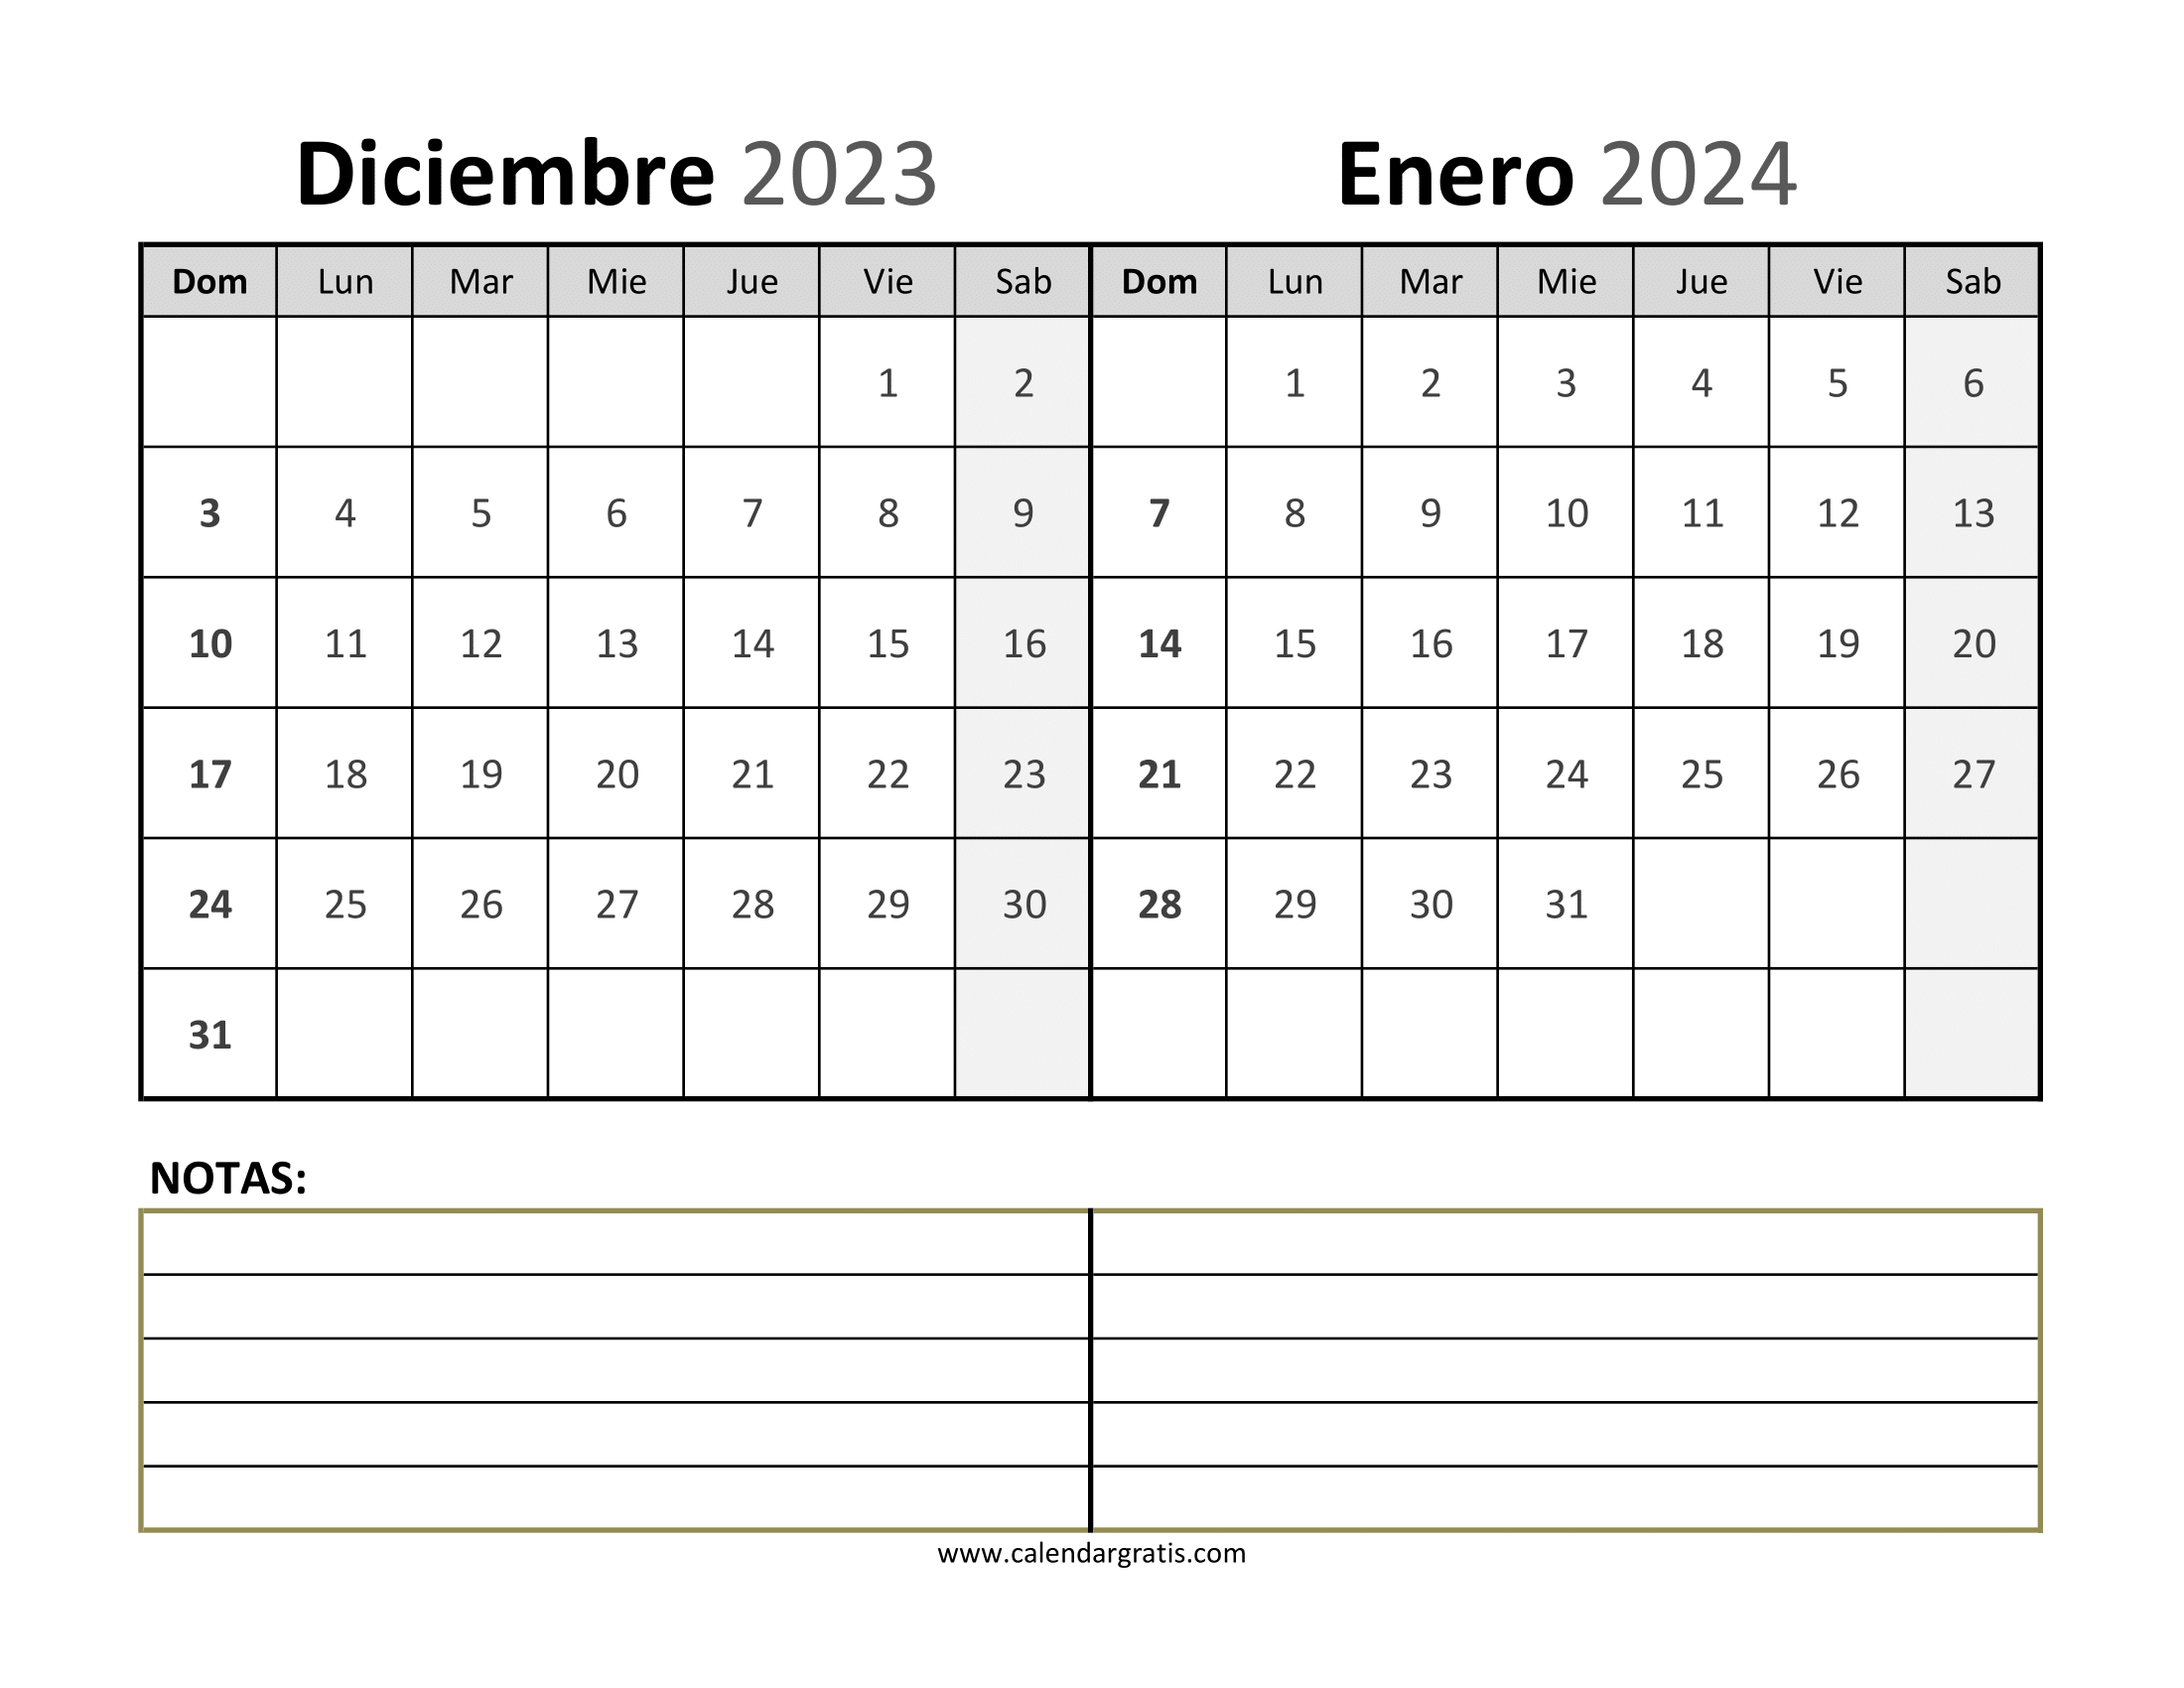 Descarga e imprime gratis el calendario de diciembre 2023 y enero 2024